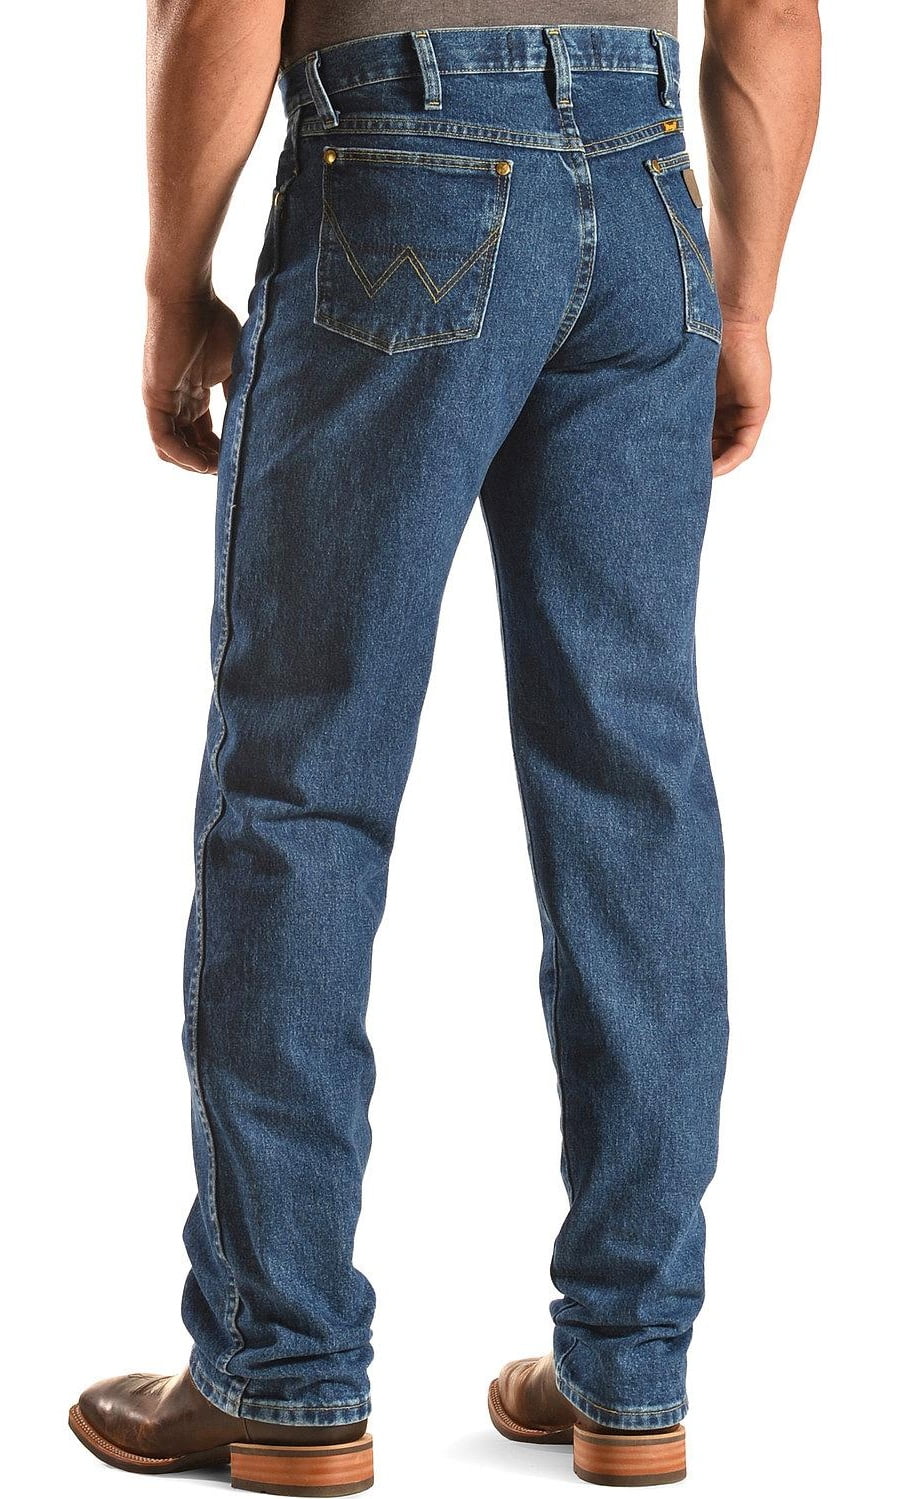 wrangler george strait cowboy cut slim fit jeans